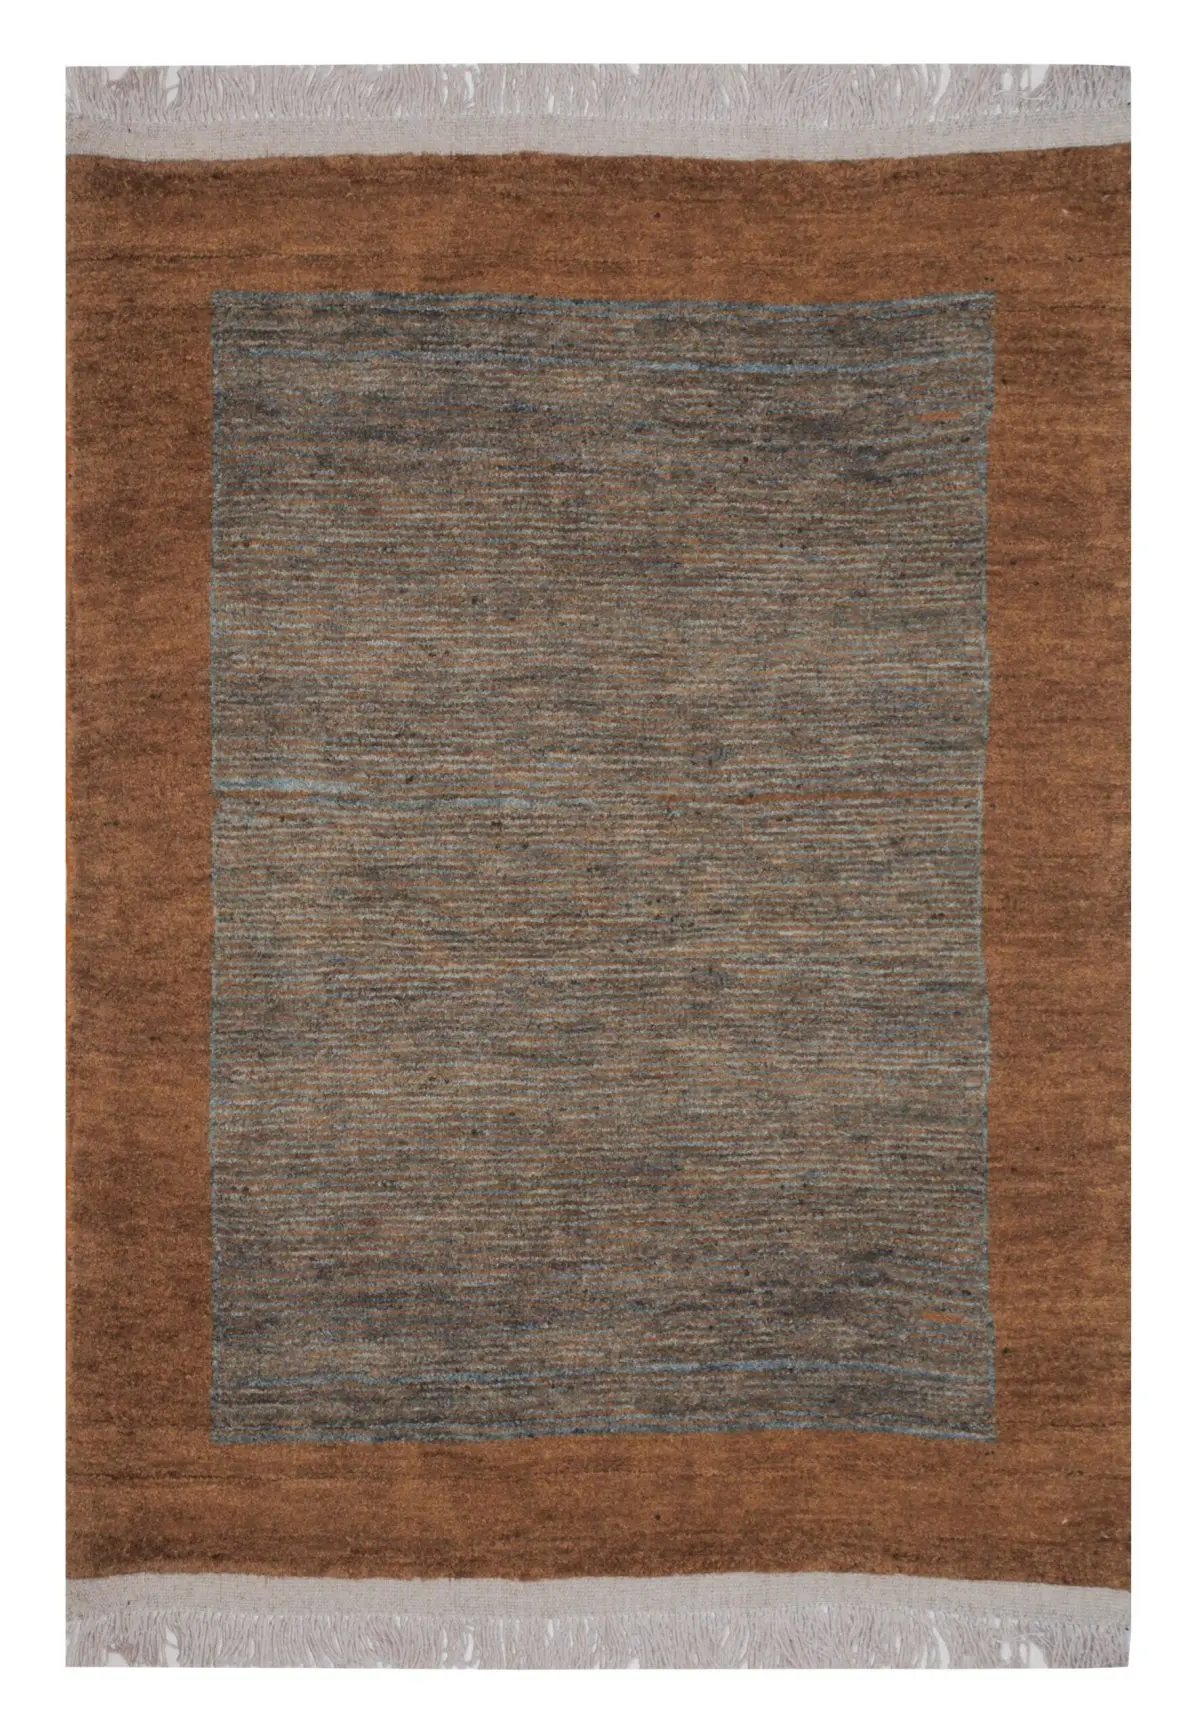 Persian Gabbeh Rug 3' 8" x 5' 6" Wool Handmade Area Rug - Shabahang Royal Carpet